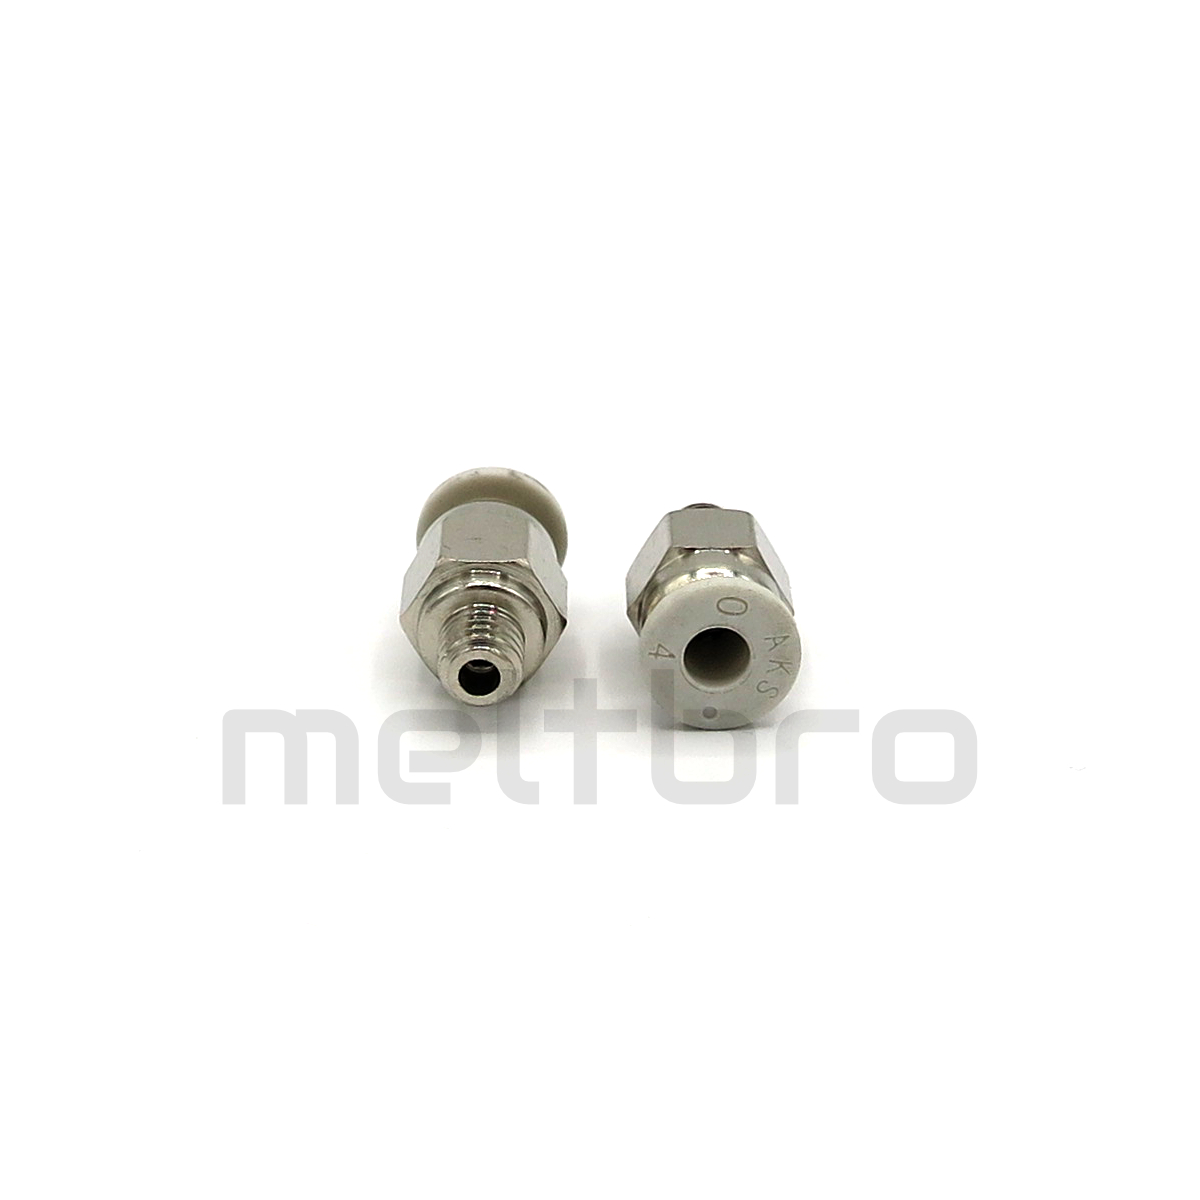 meltbro - Pneumatik Steckverbinder PC4-M6 PC4-M10 4mm Schlauch Fitting  Druckluft bowden Ender 3